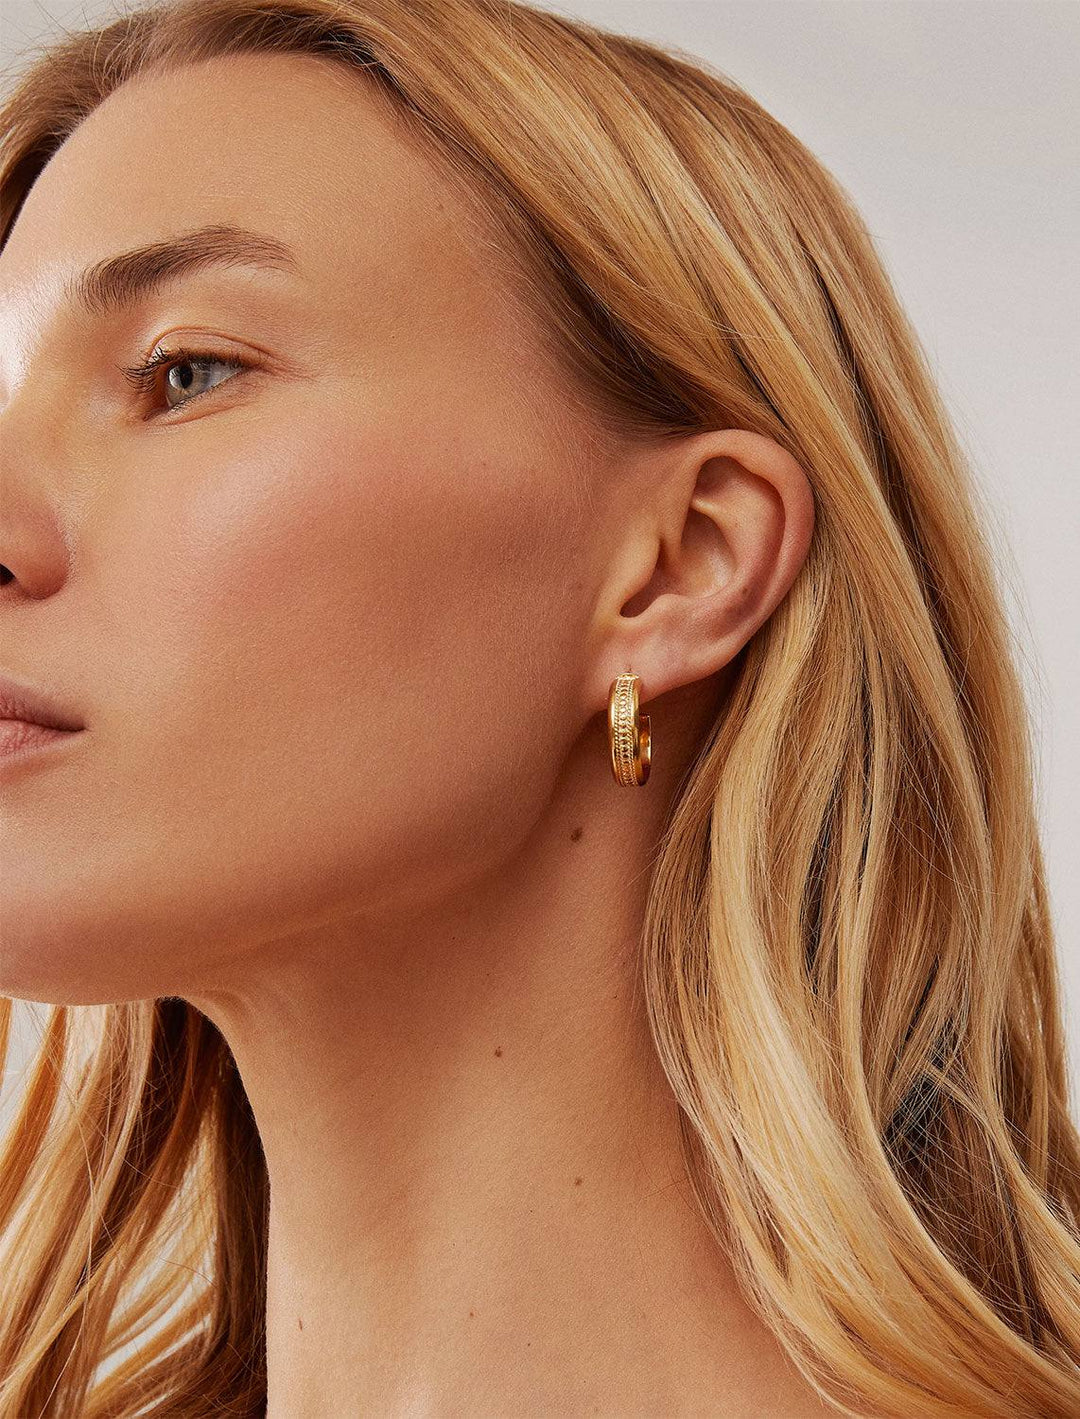 model wearing classic wide hoop earrings in gold